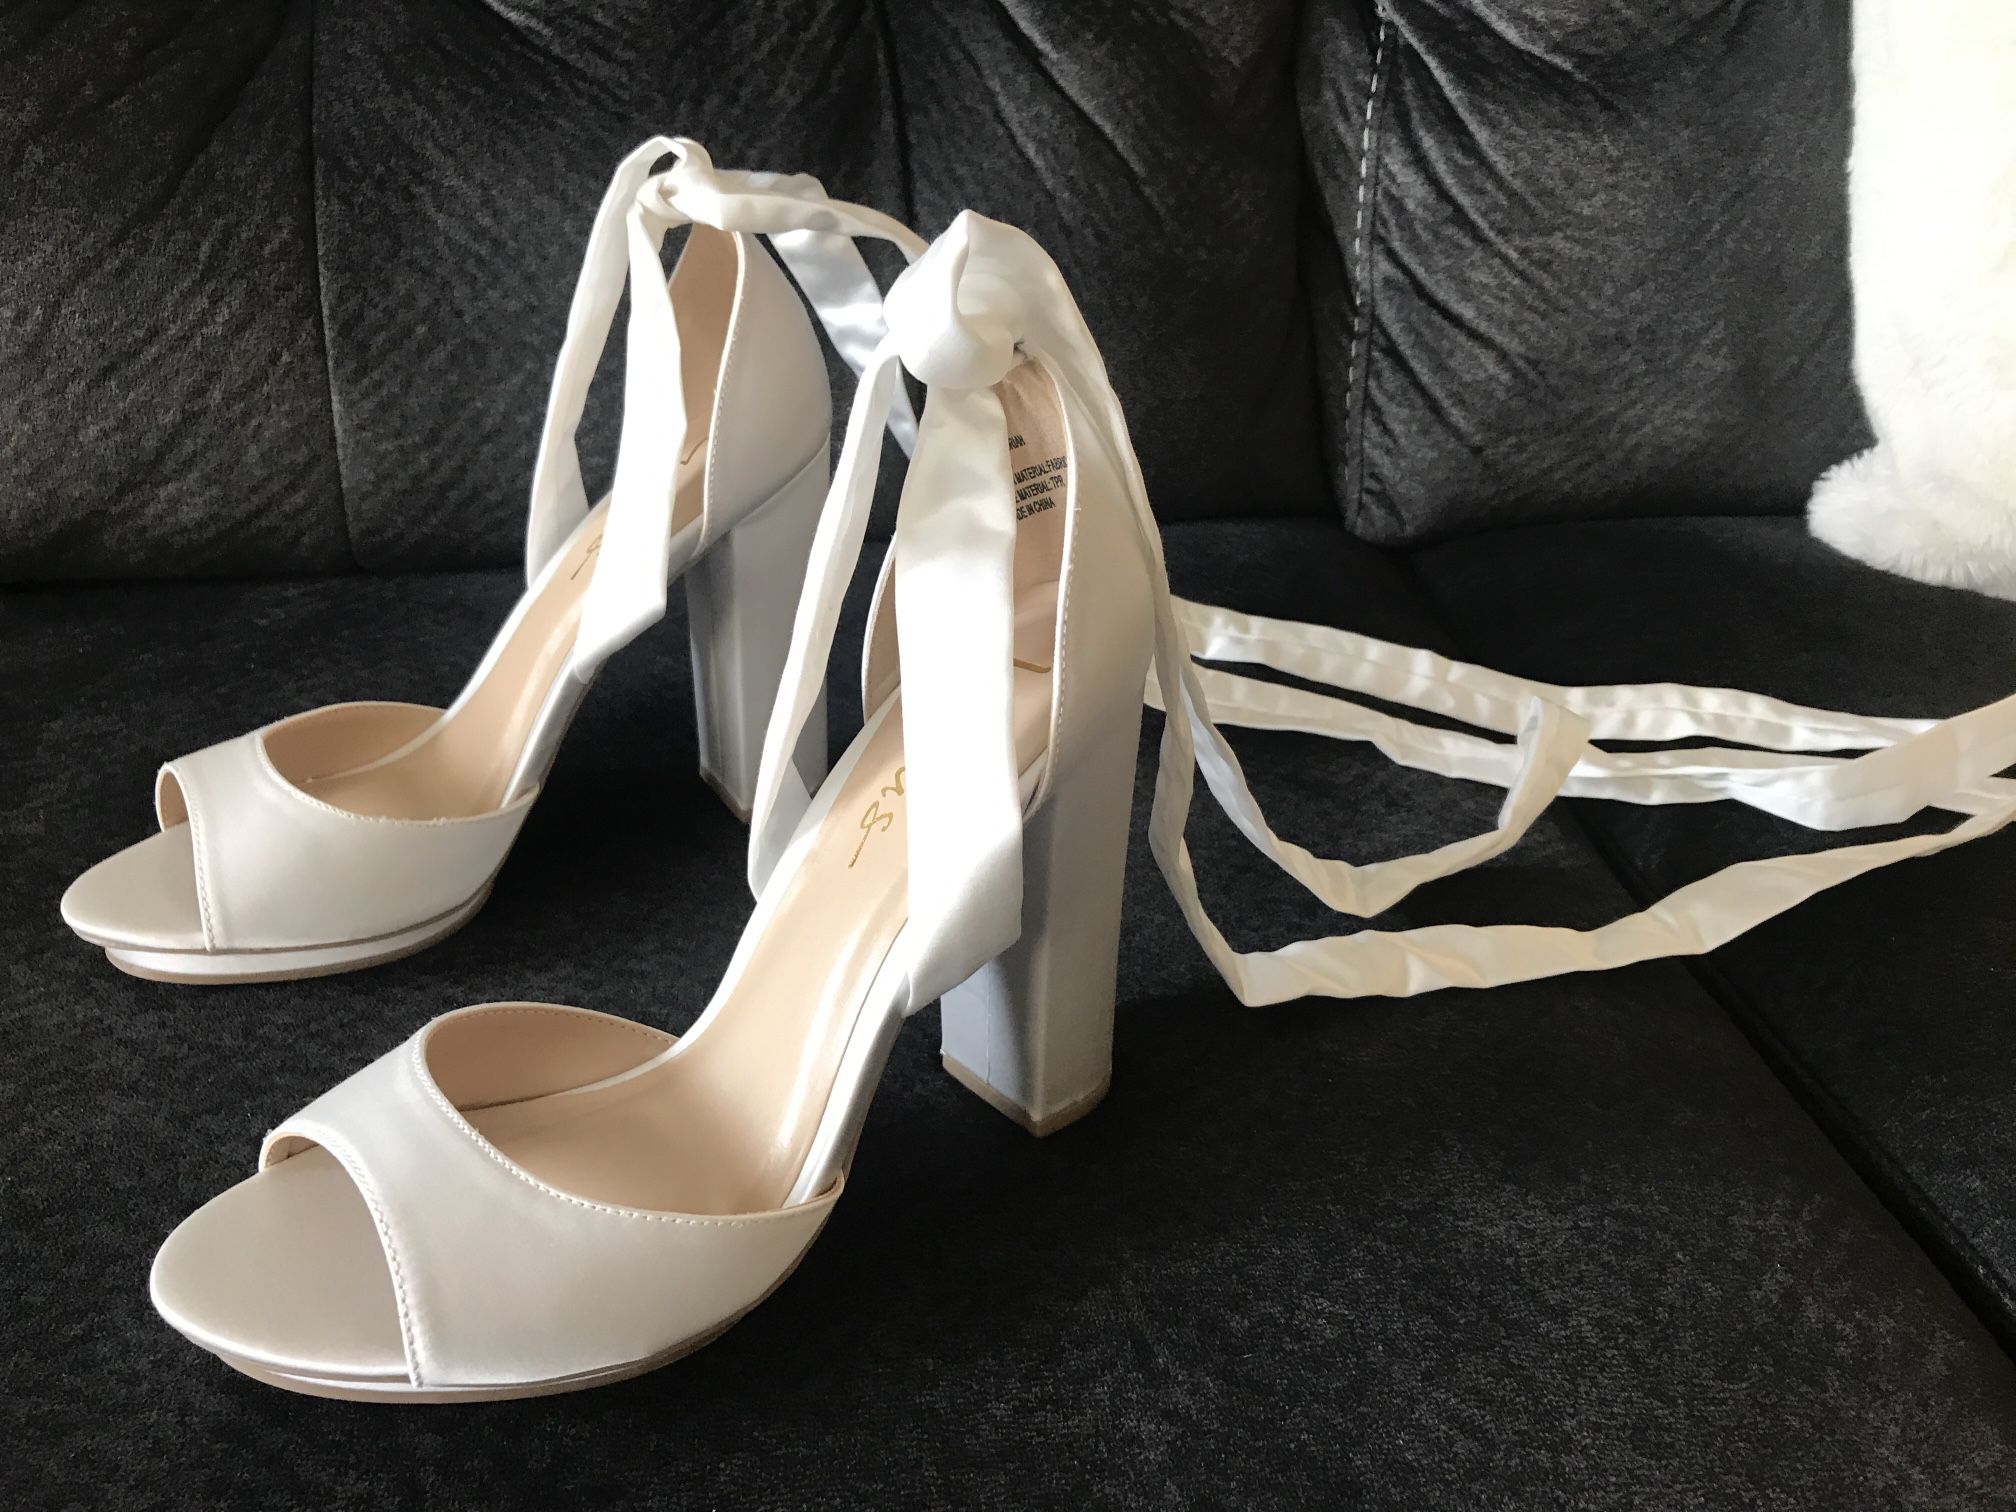 White wedding lace-up heels - size 8.5